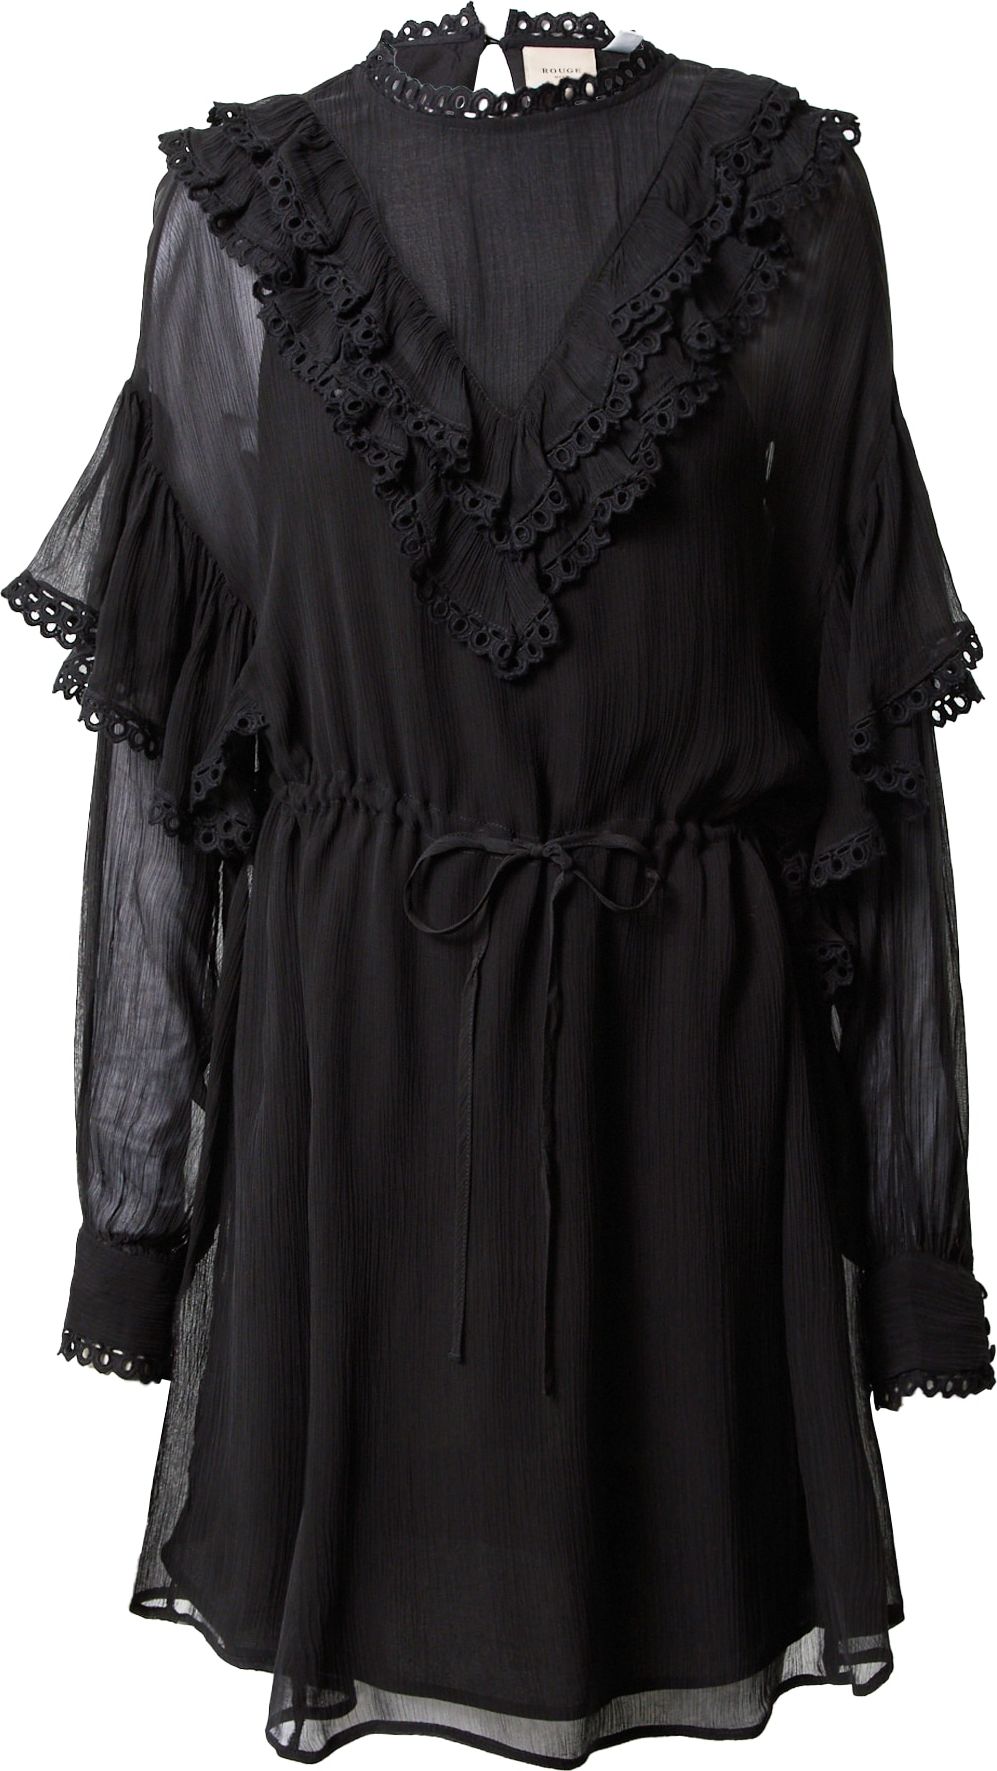 VILA ROUGE Šaty 'DANTE' černá